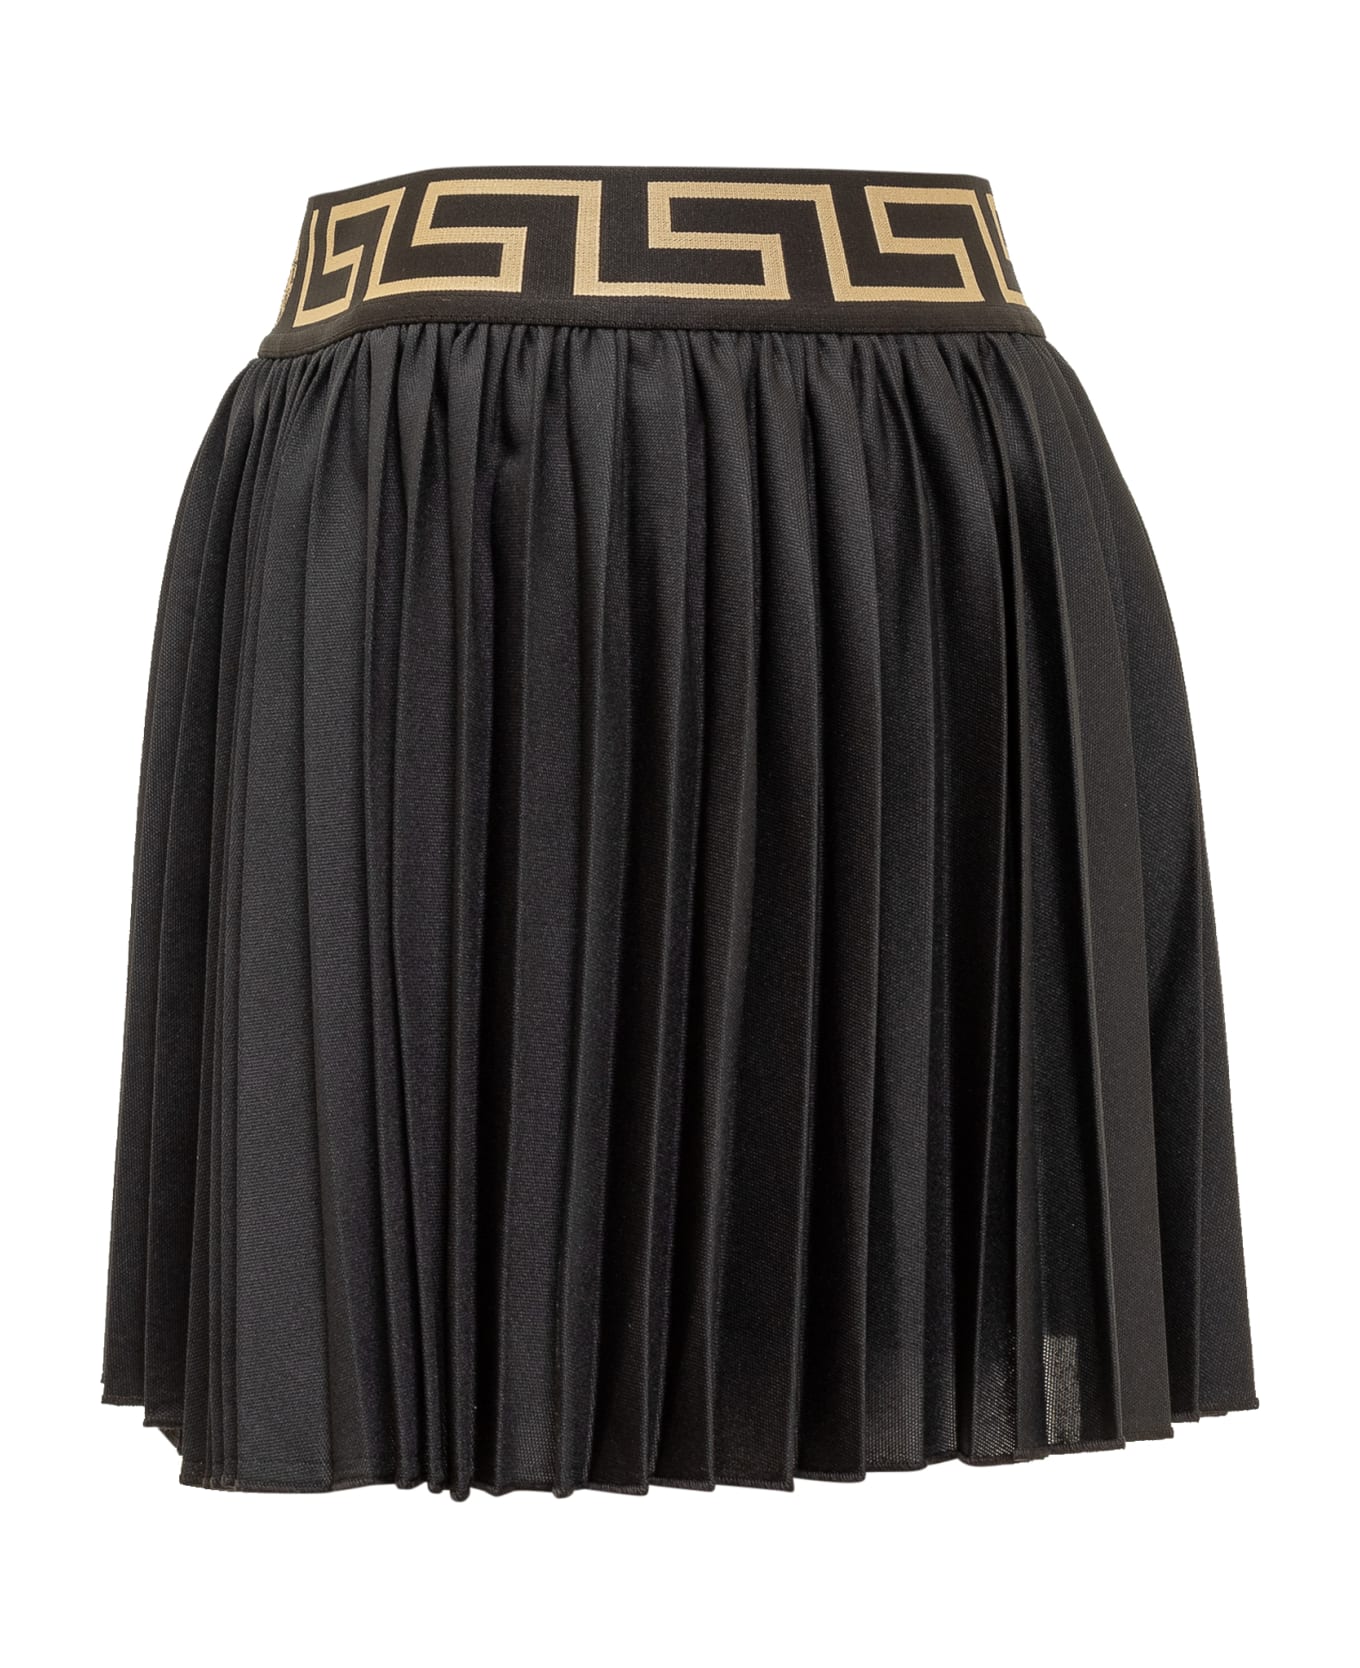 Versace Greca Shorts Skirt - NERO